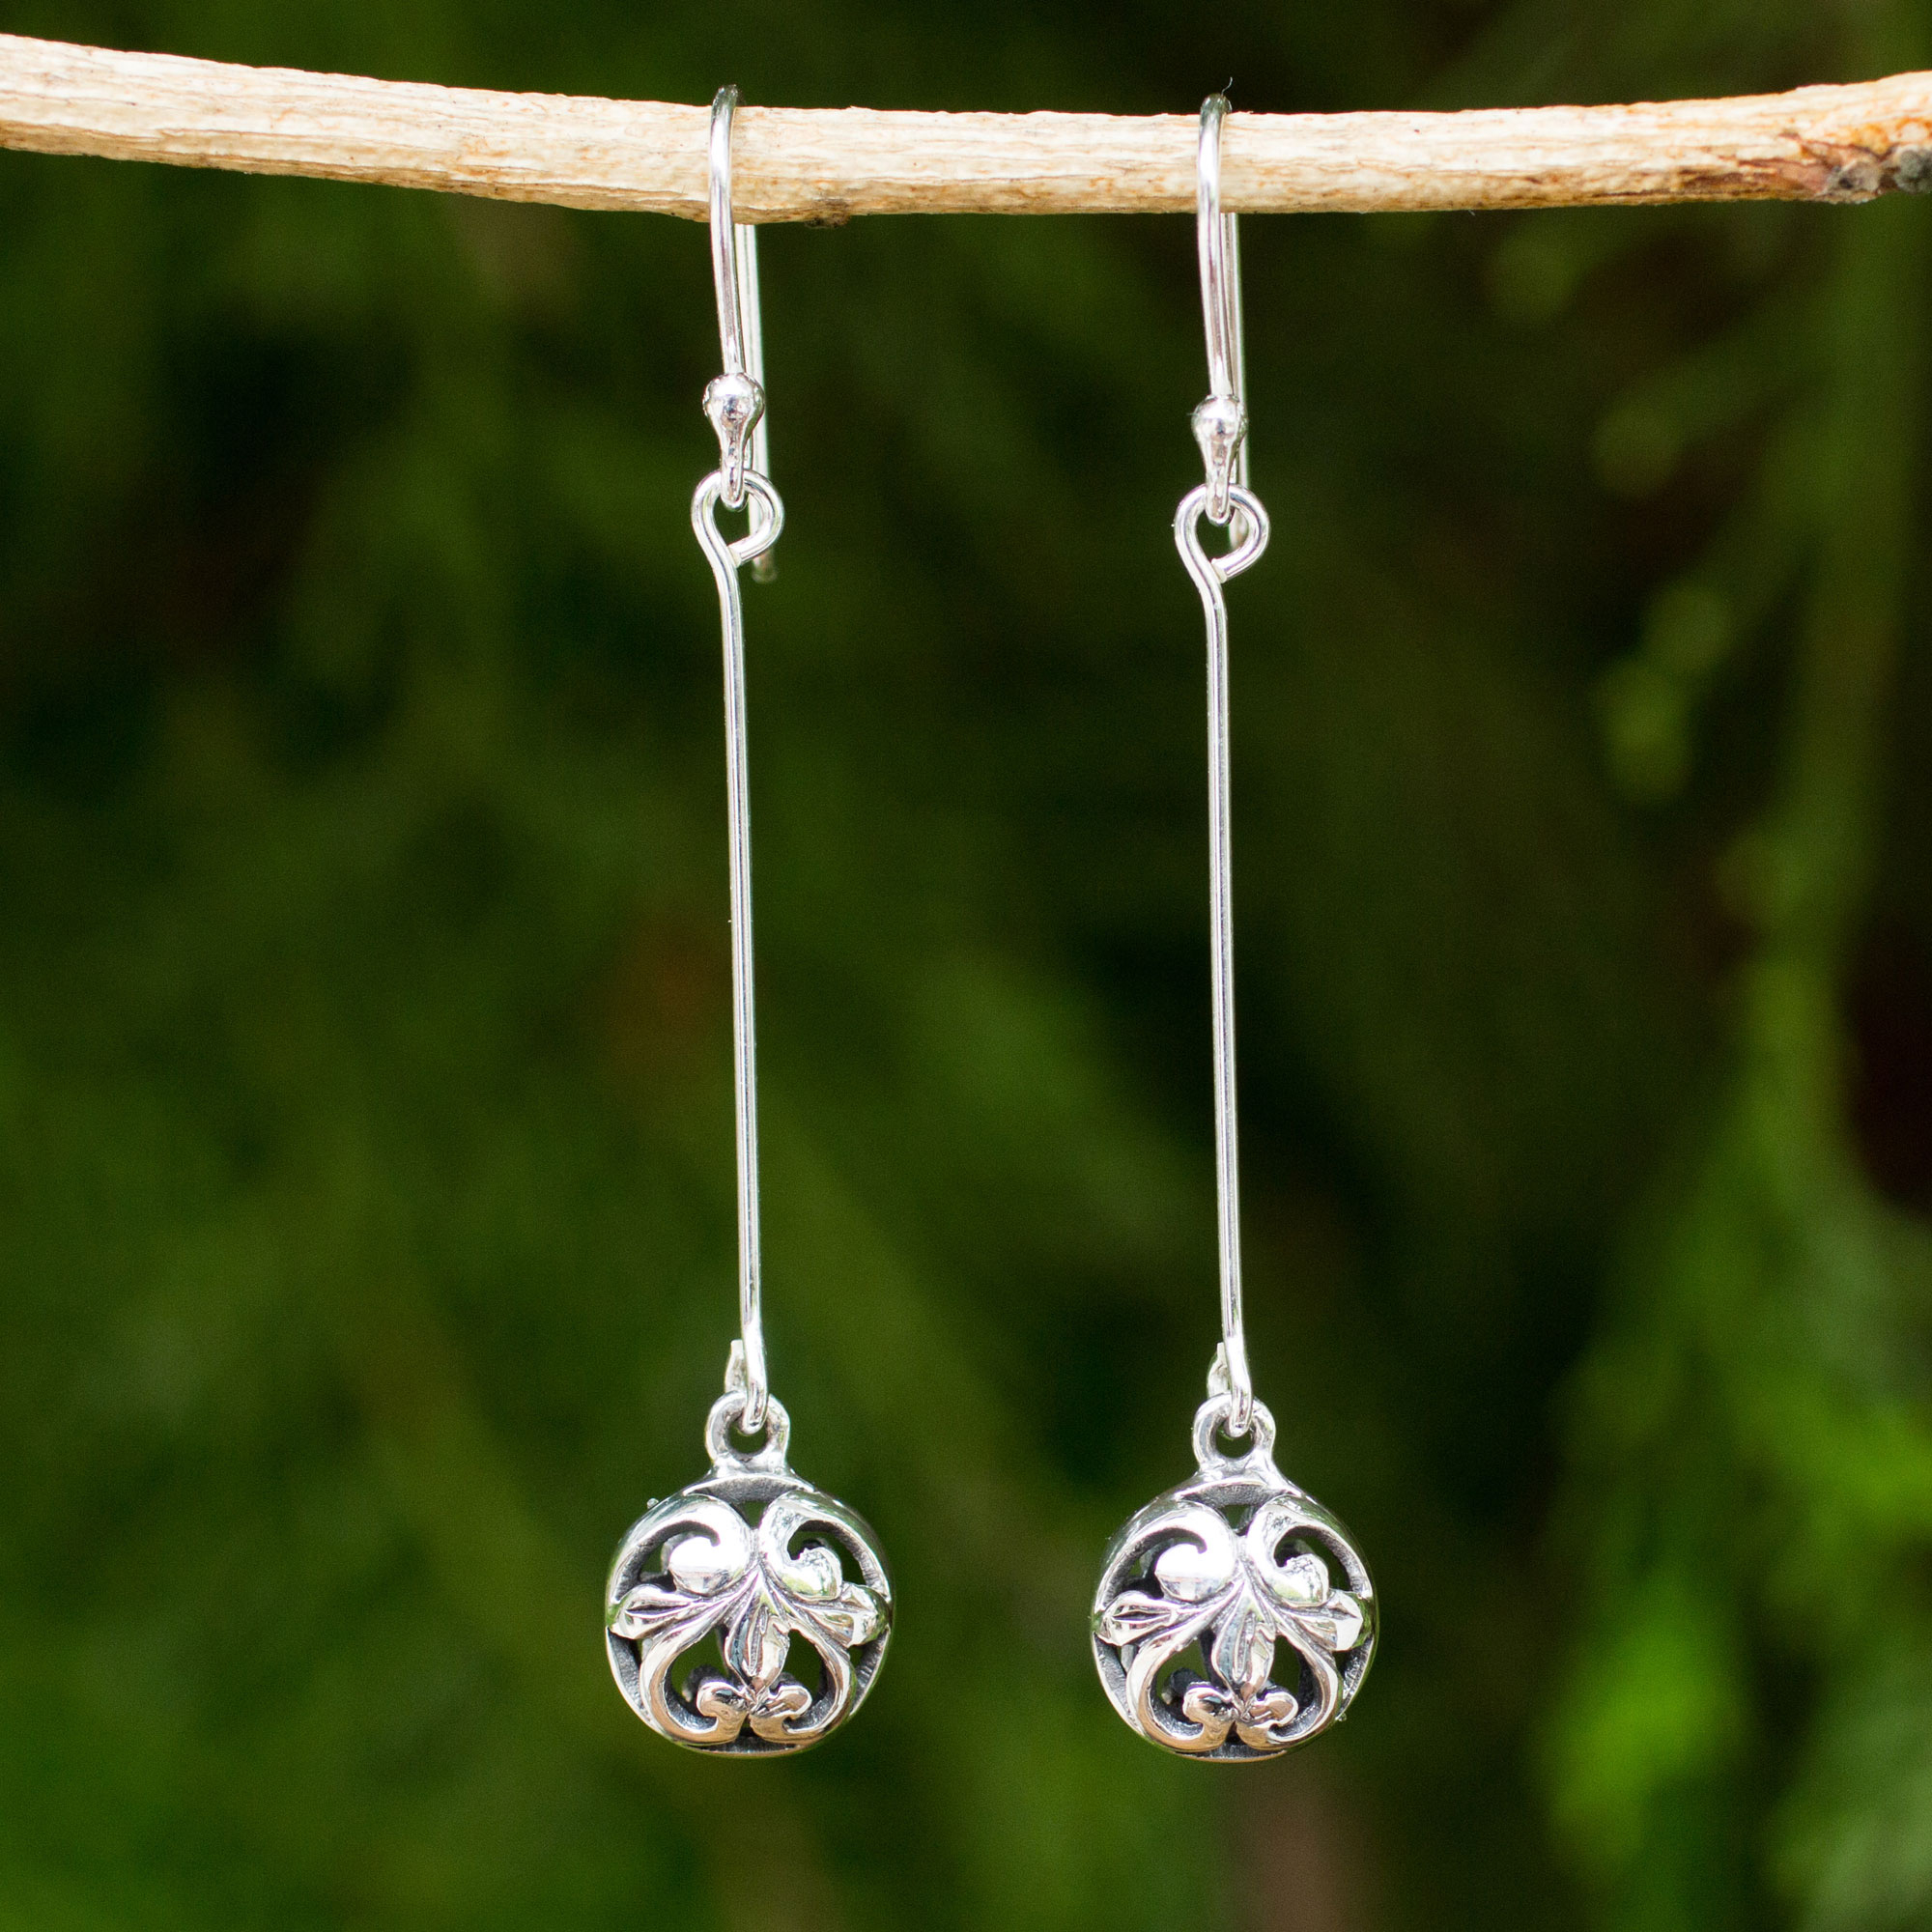 Dangle Earrings Swing Earrings with Round Balls Silver Ball Earrings Sterling Silver Wire Drop Earrings